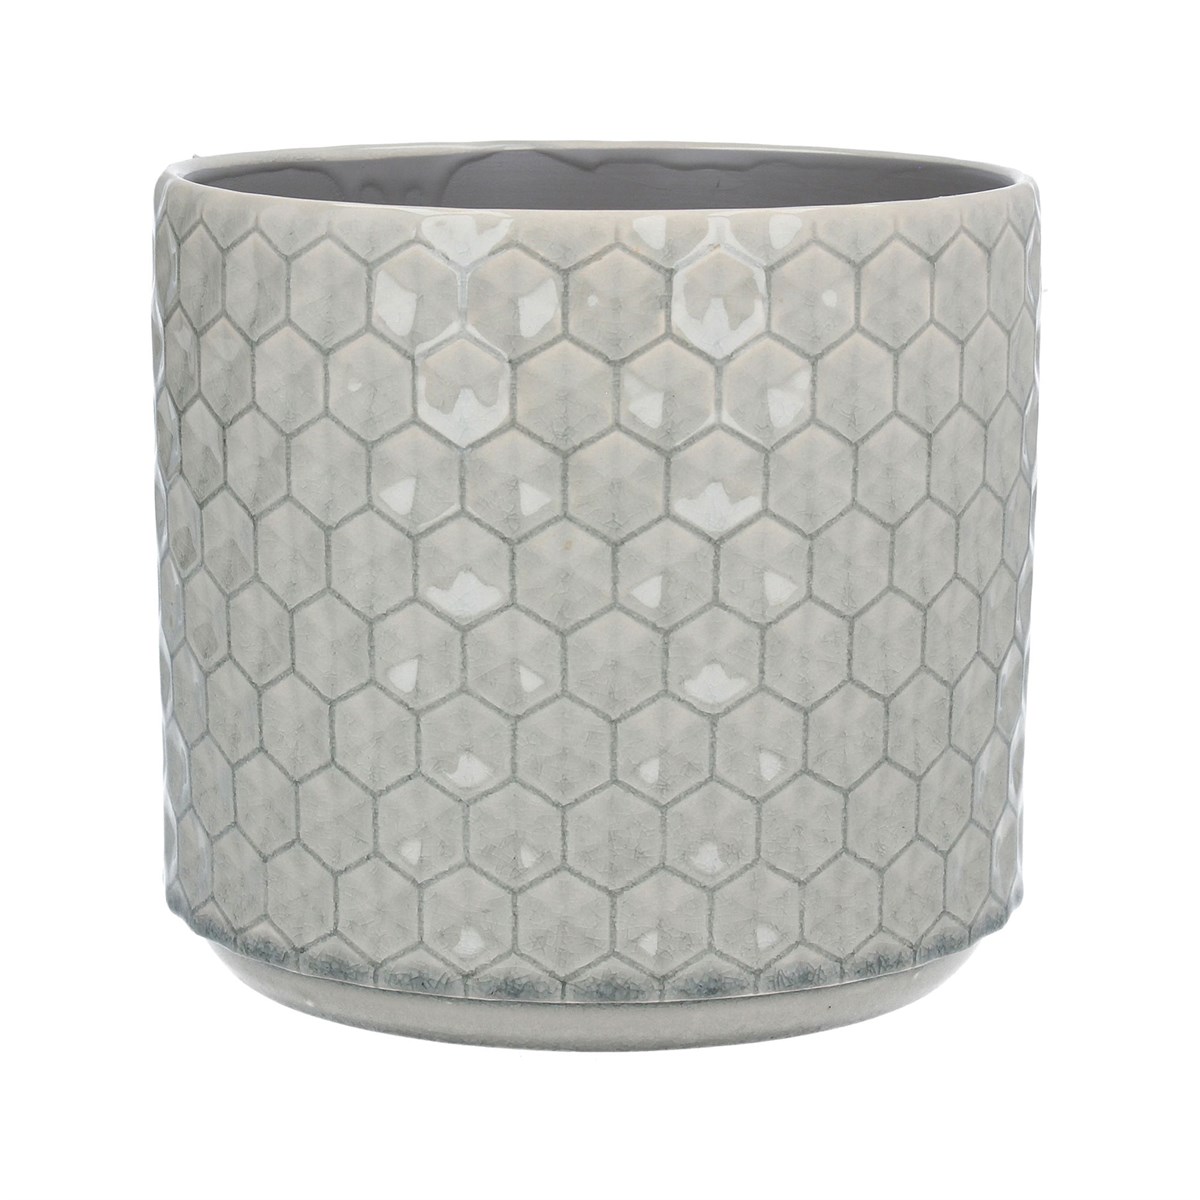 Gisela Graham Grey Honeycomb Ceramic Pot Cover, Large